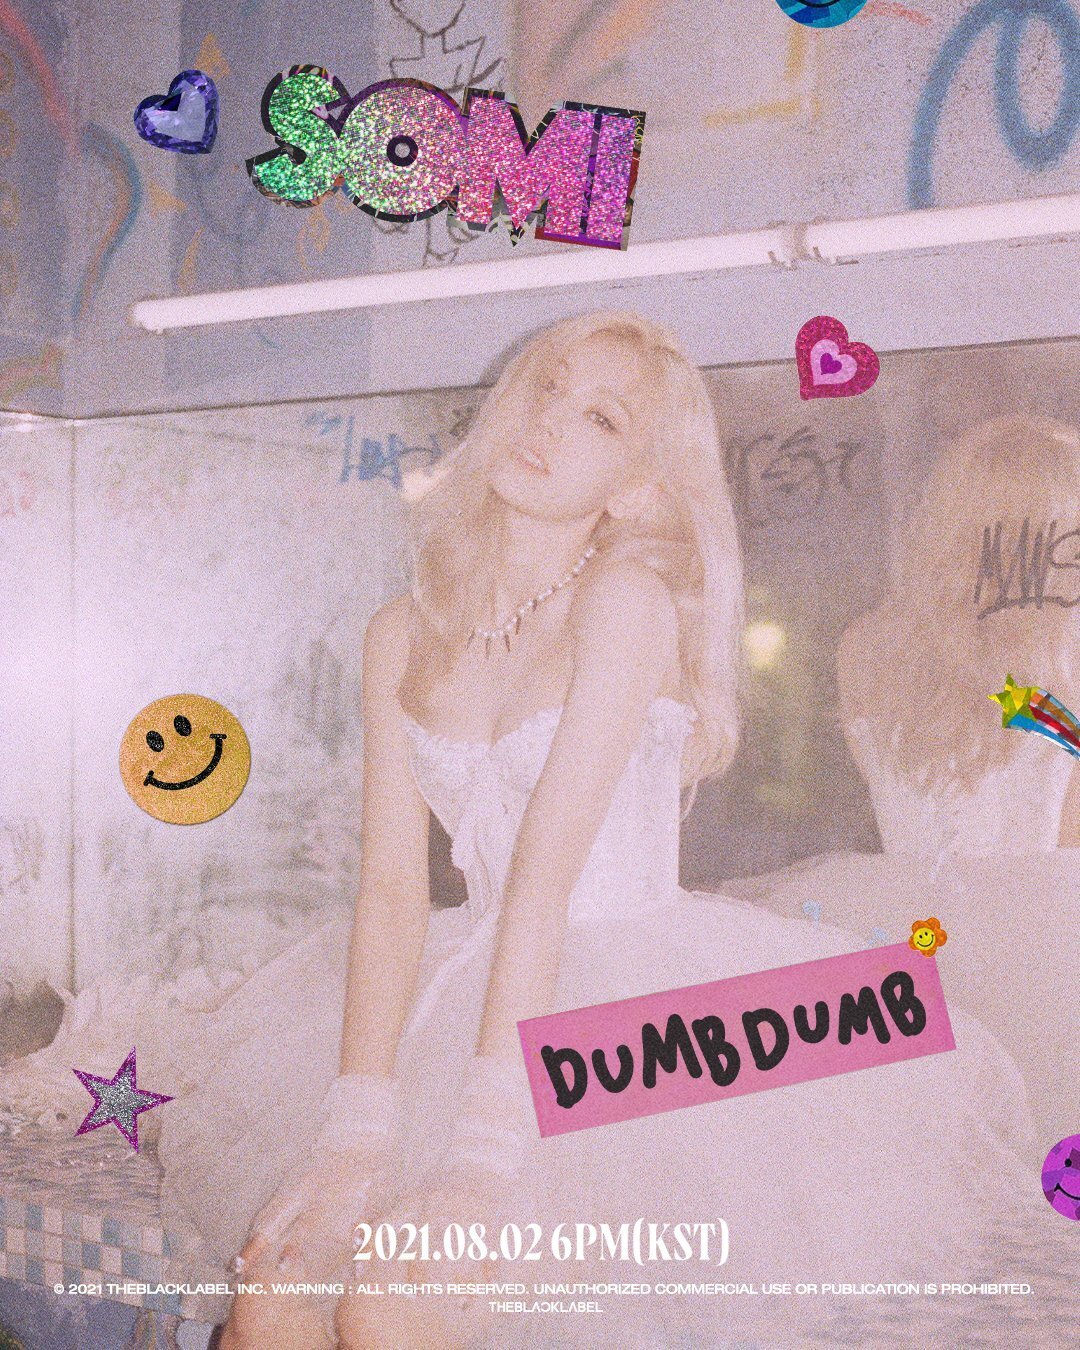 SOMI - 'DUMB DUMB' Concept Teasers